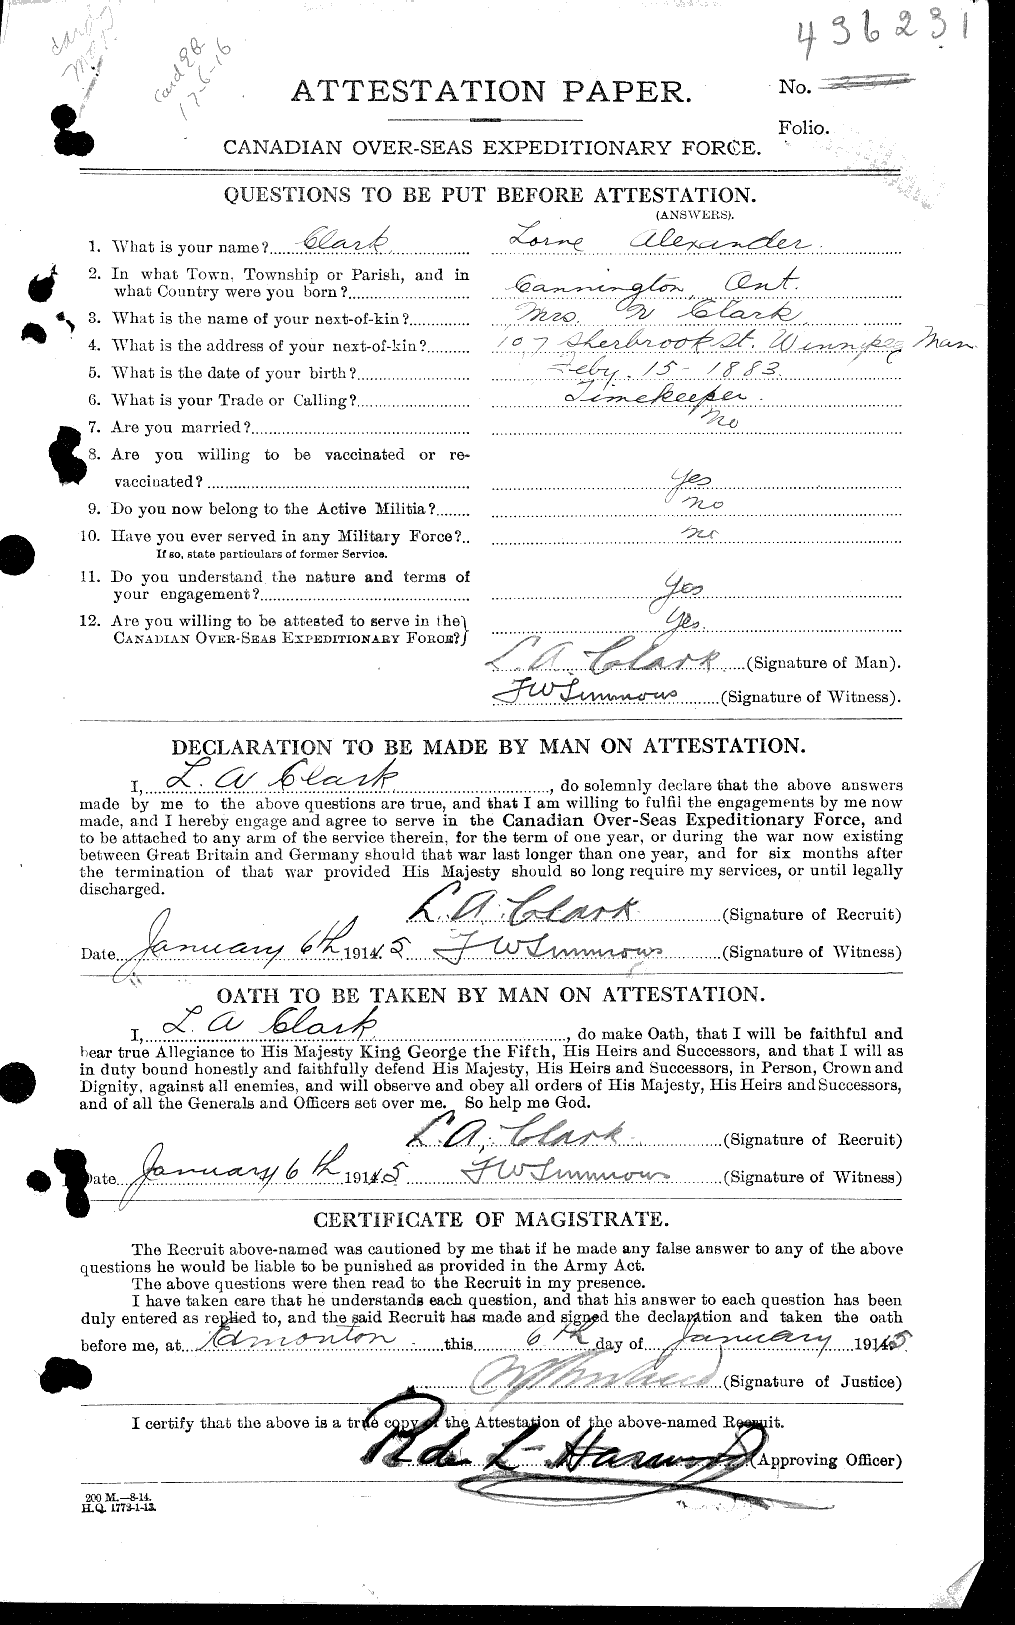 Dossiers du Personnel de la Première Guerre mondiale - CEC 018633a